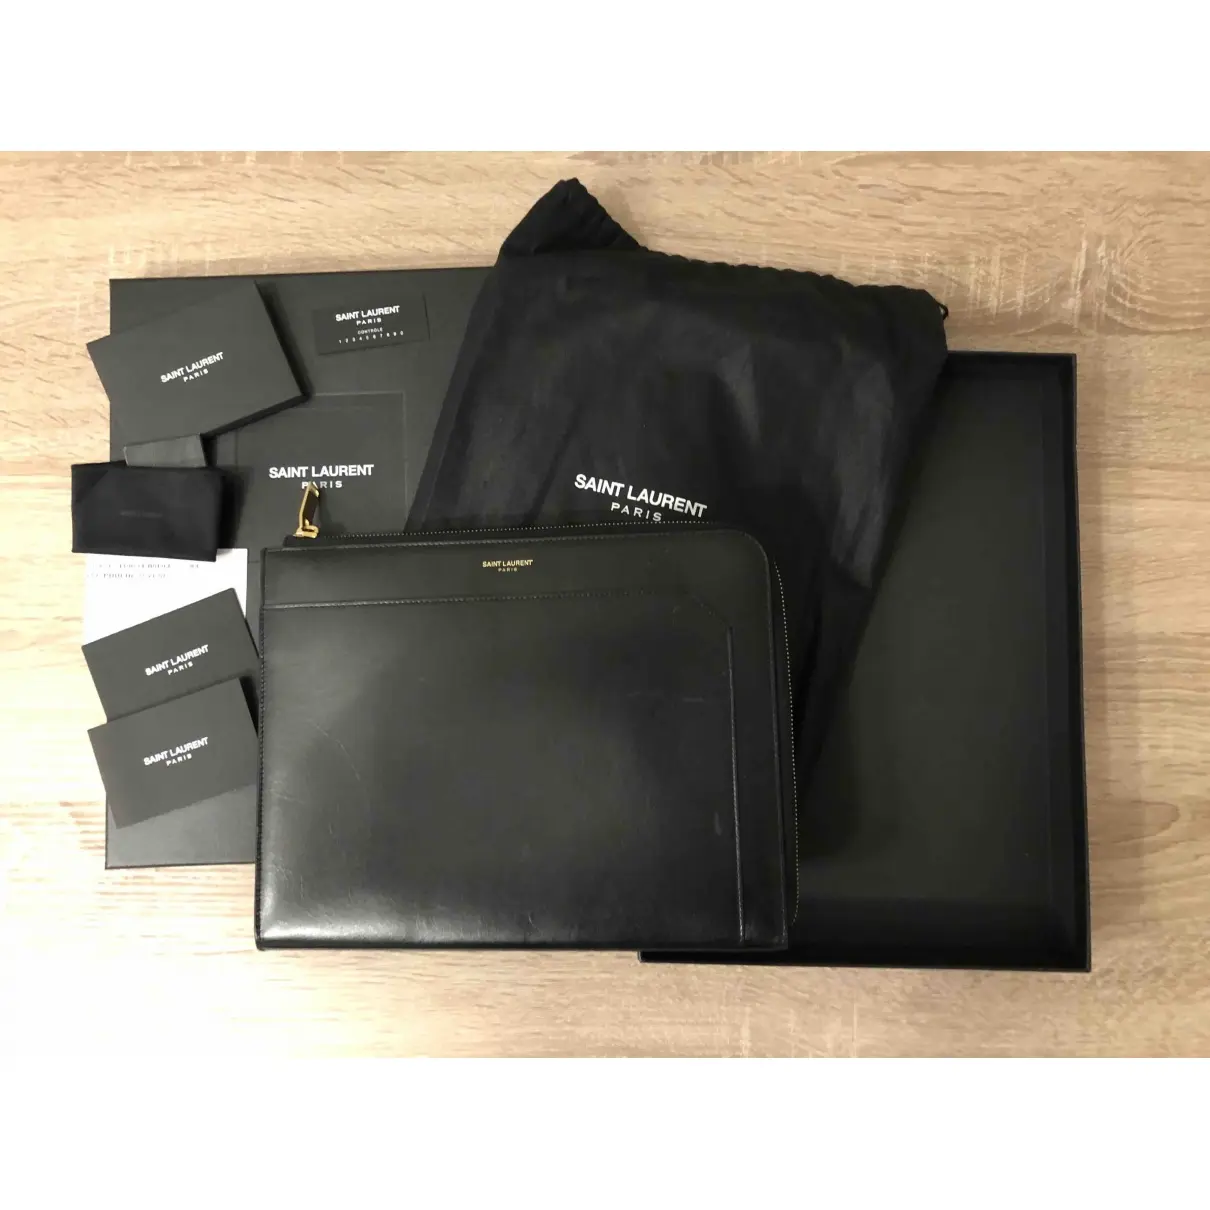 Luxury Saint Laurent Small bags, wallets & cases Men